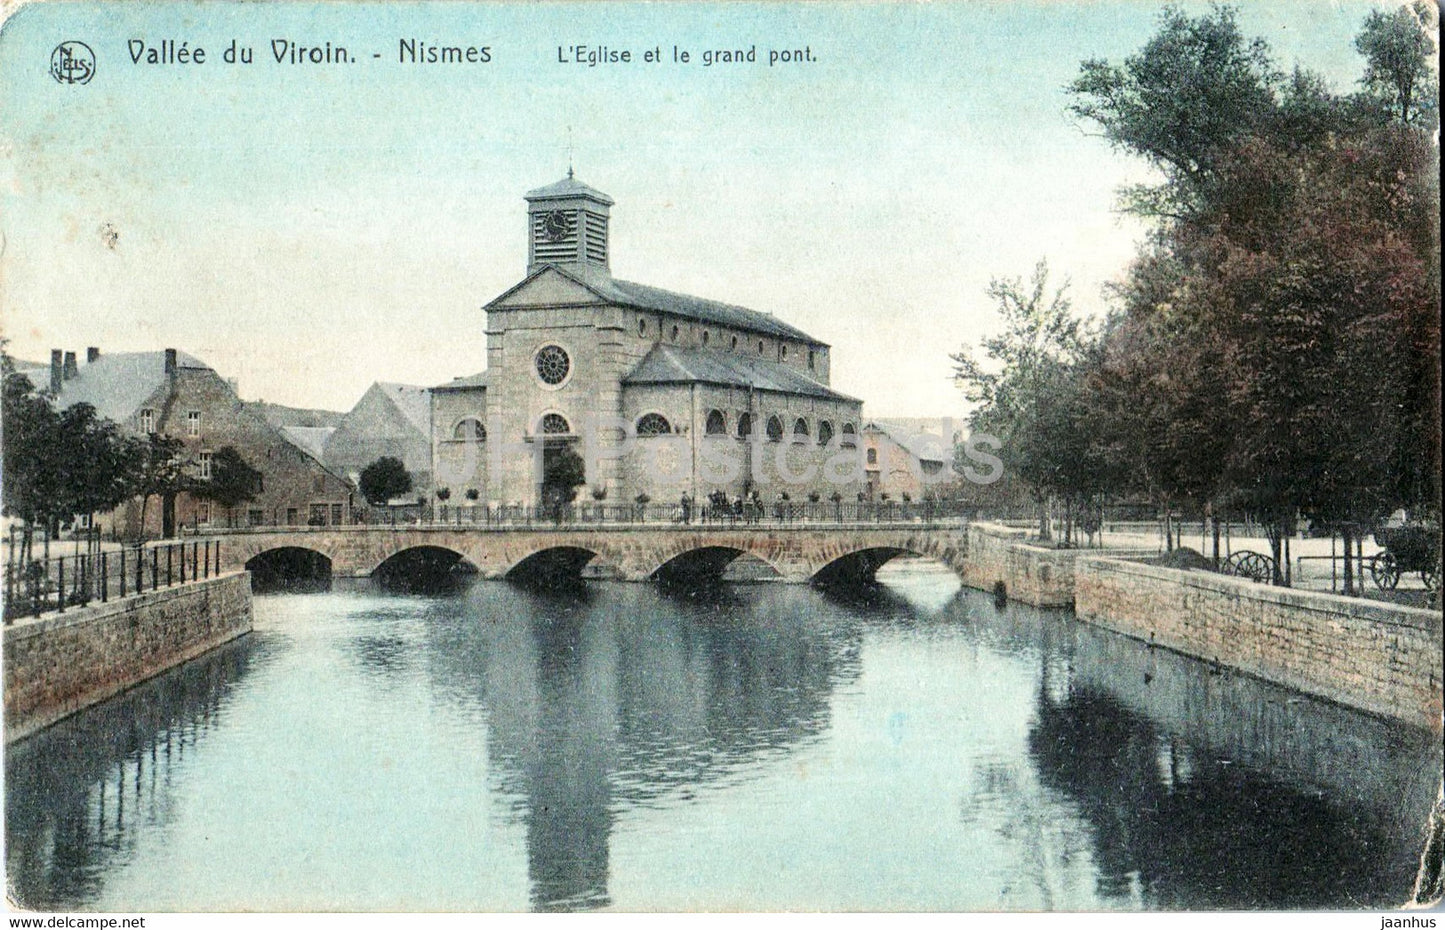 Valle du Viroin - Nismes - L'Eglise et le grand pont - church - bridge - old postcard - Belgium - used - JH Postcards